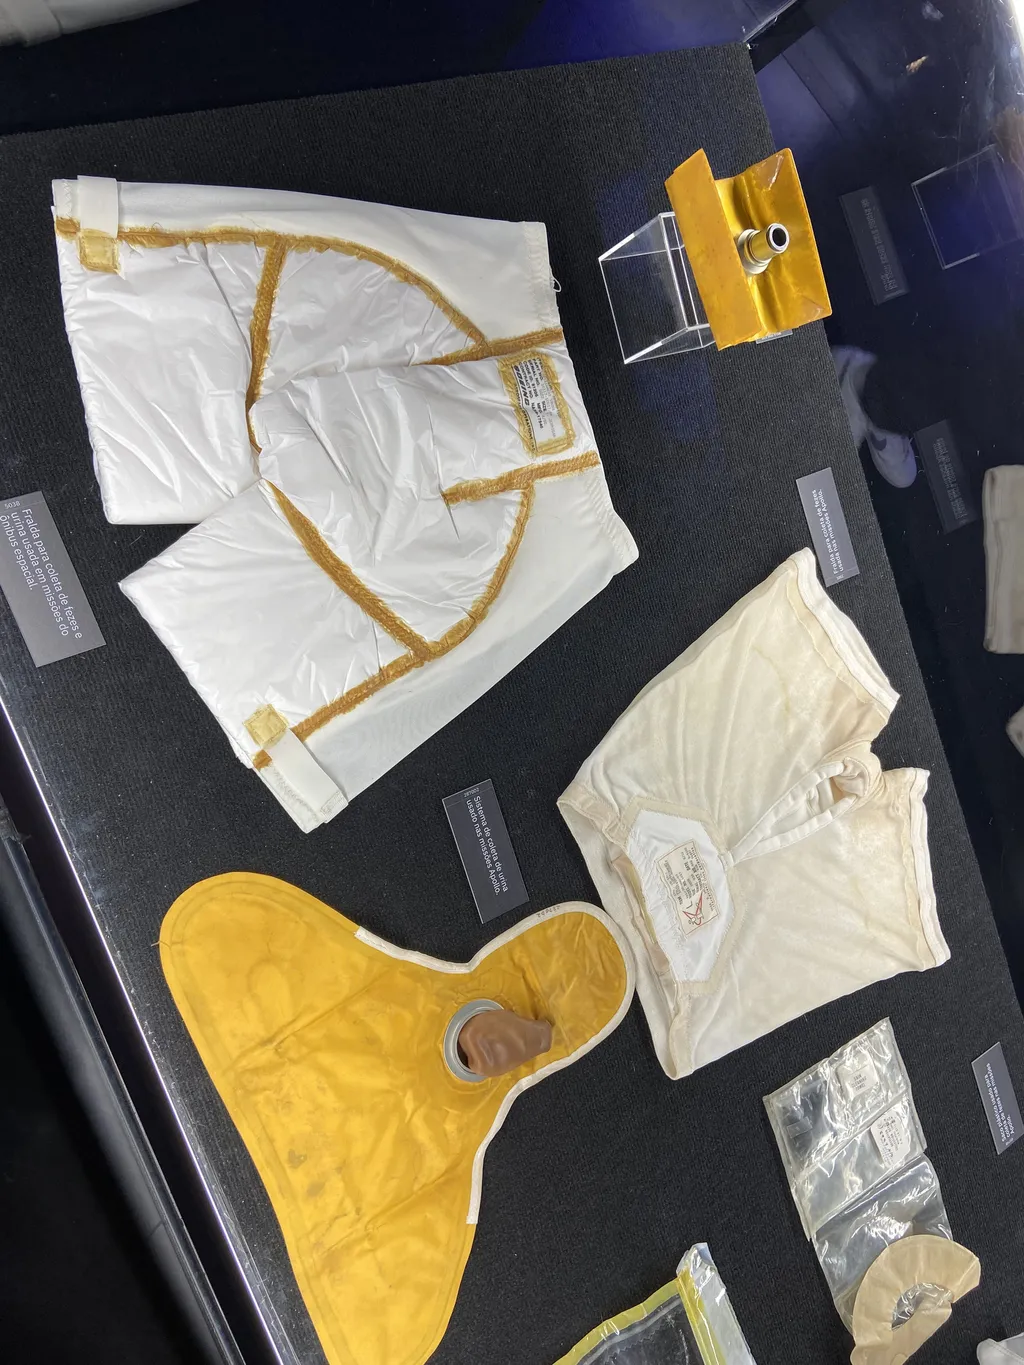 Sistema de coleta de urina que fazia parte do traje espacial do programa Apollo (Imagem: Patricia Gnipper/Canaltech)